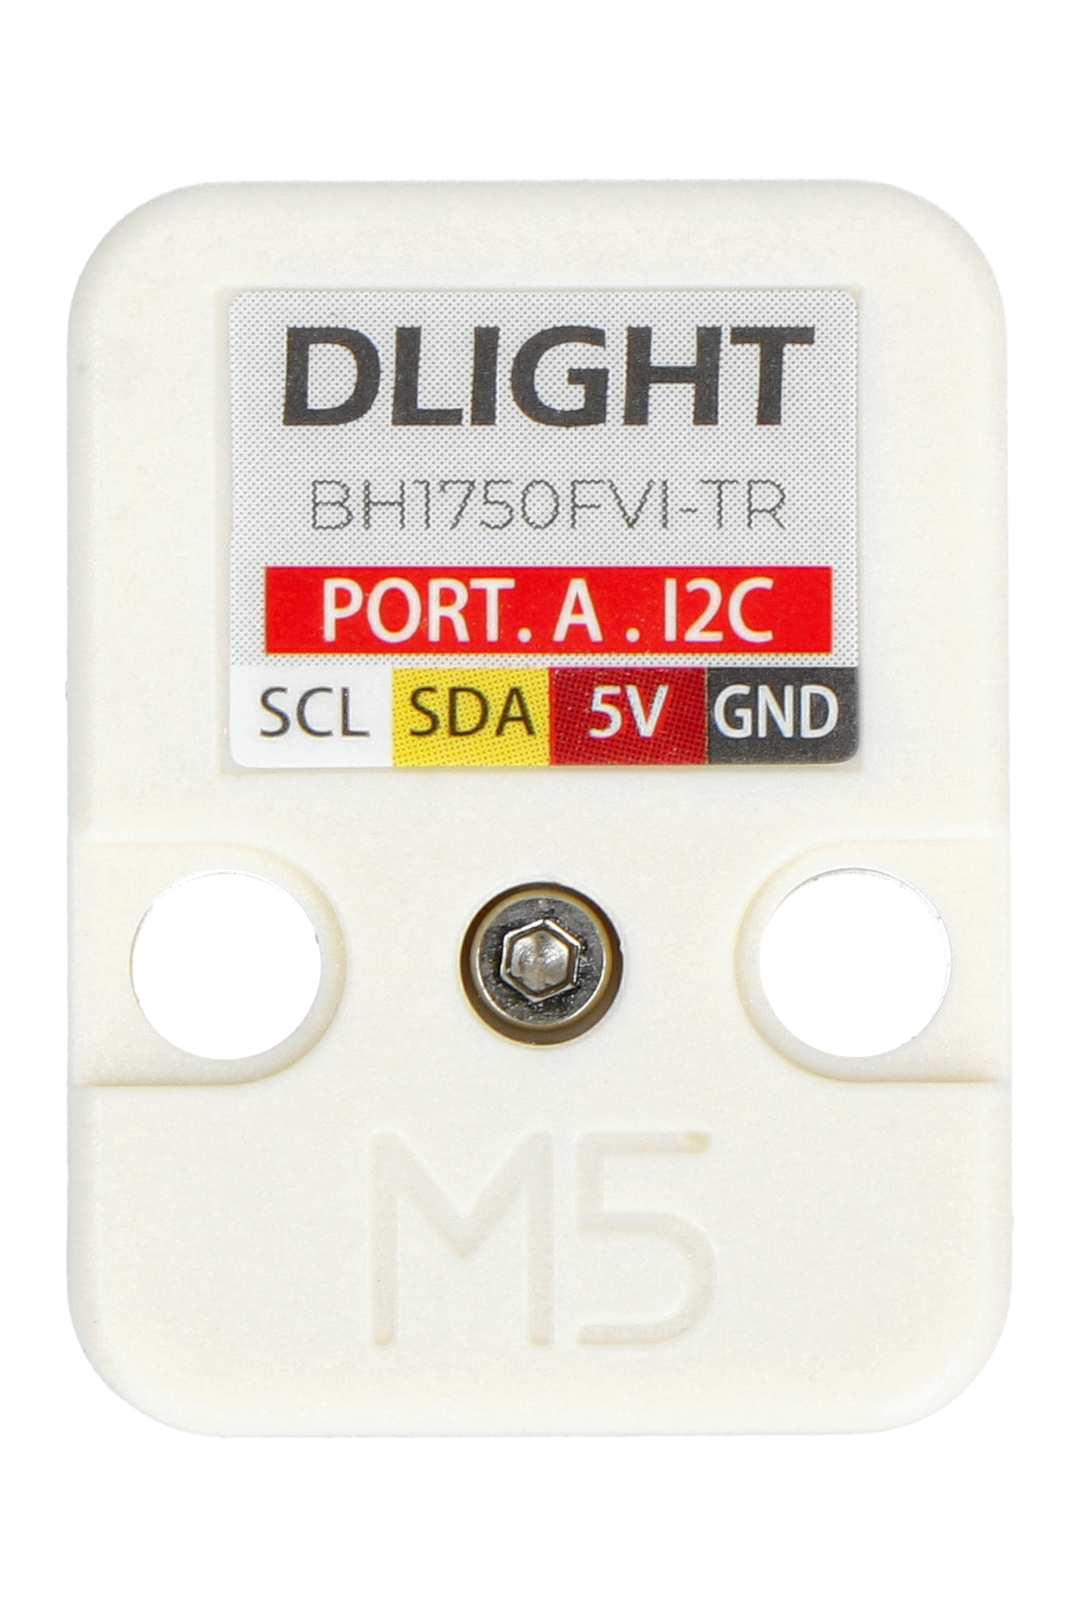 Umgebungslichtsensor DLIGHT - BH1750FVI-TR - Erweiterungsmodule